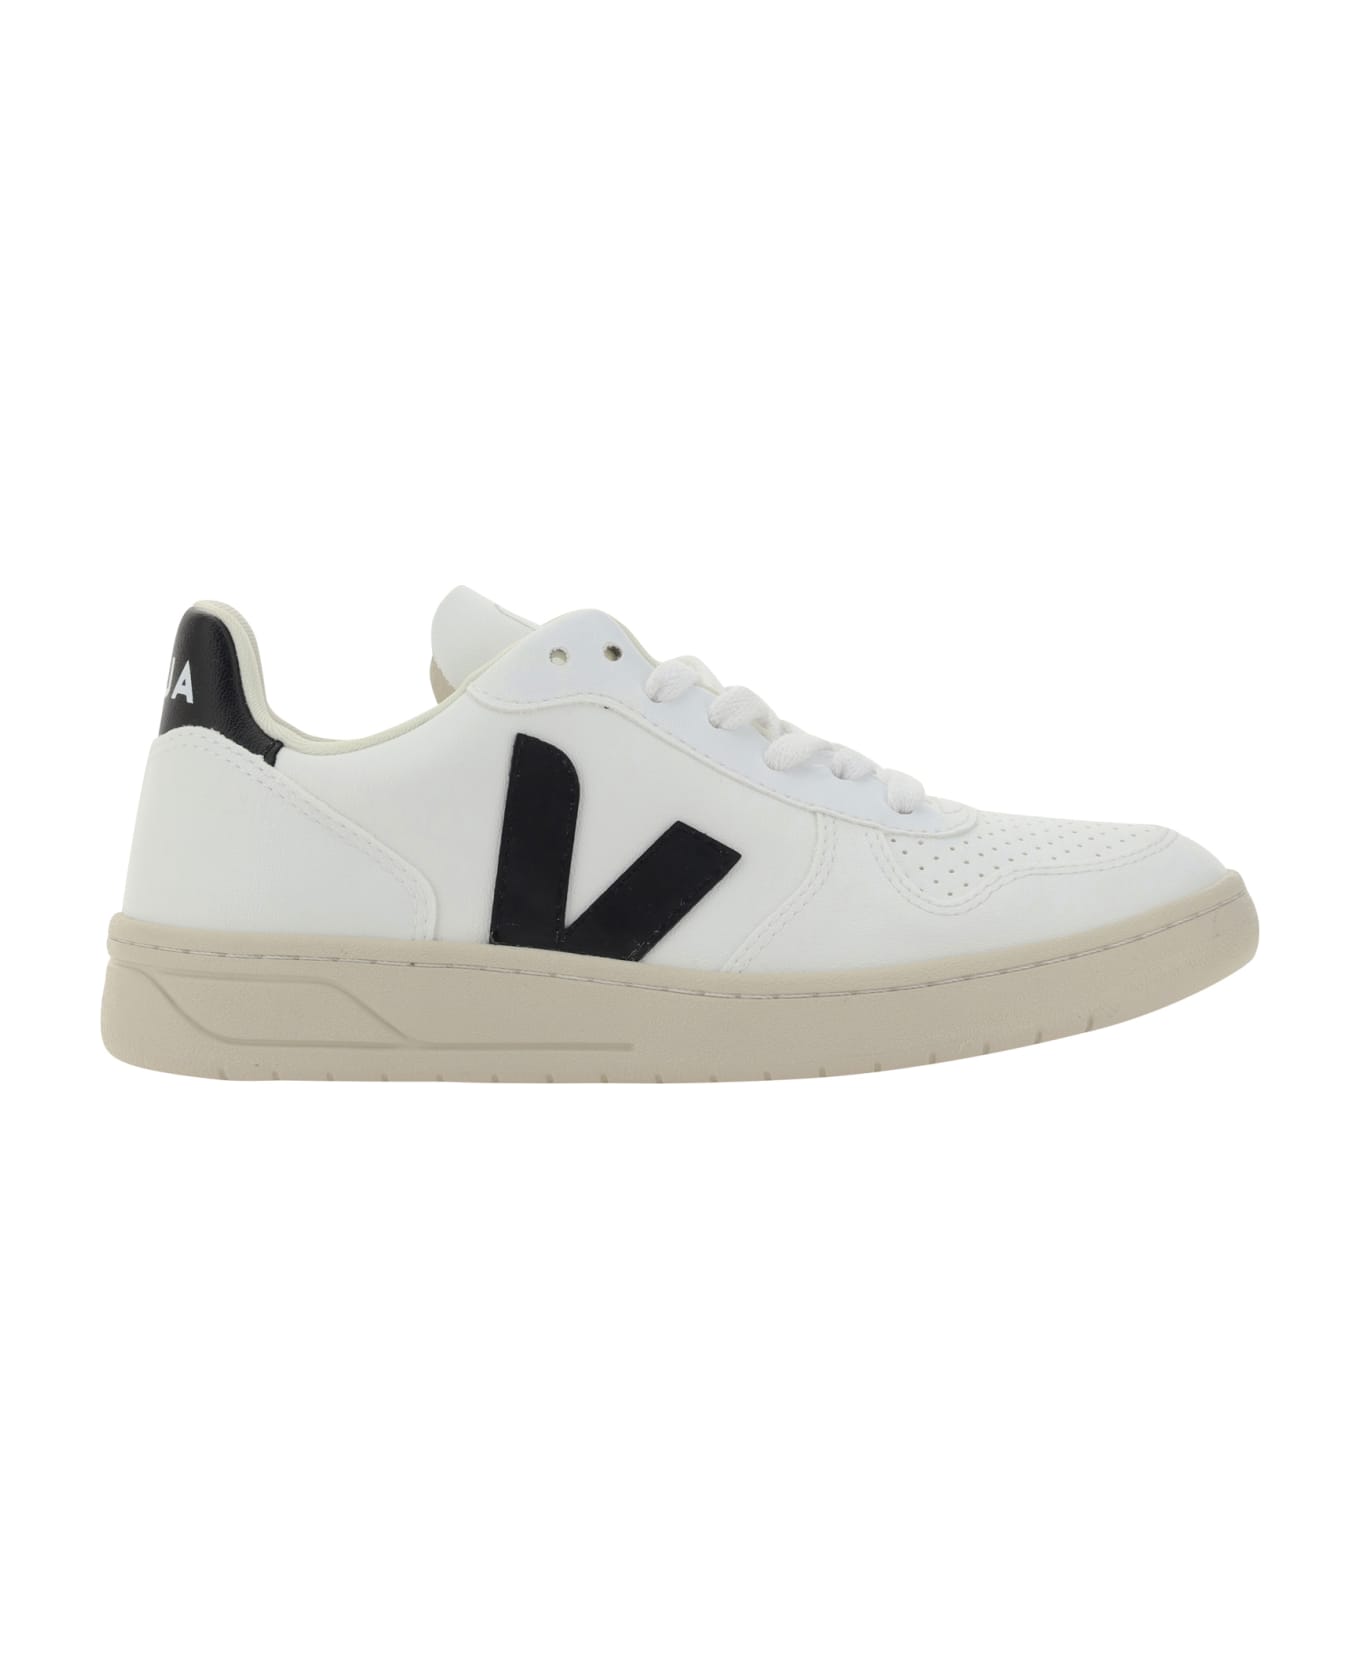 Veja Sneakers - White/black